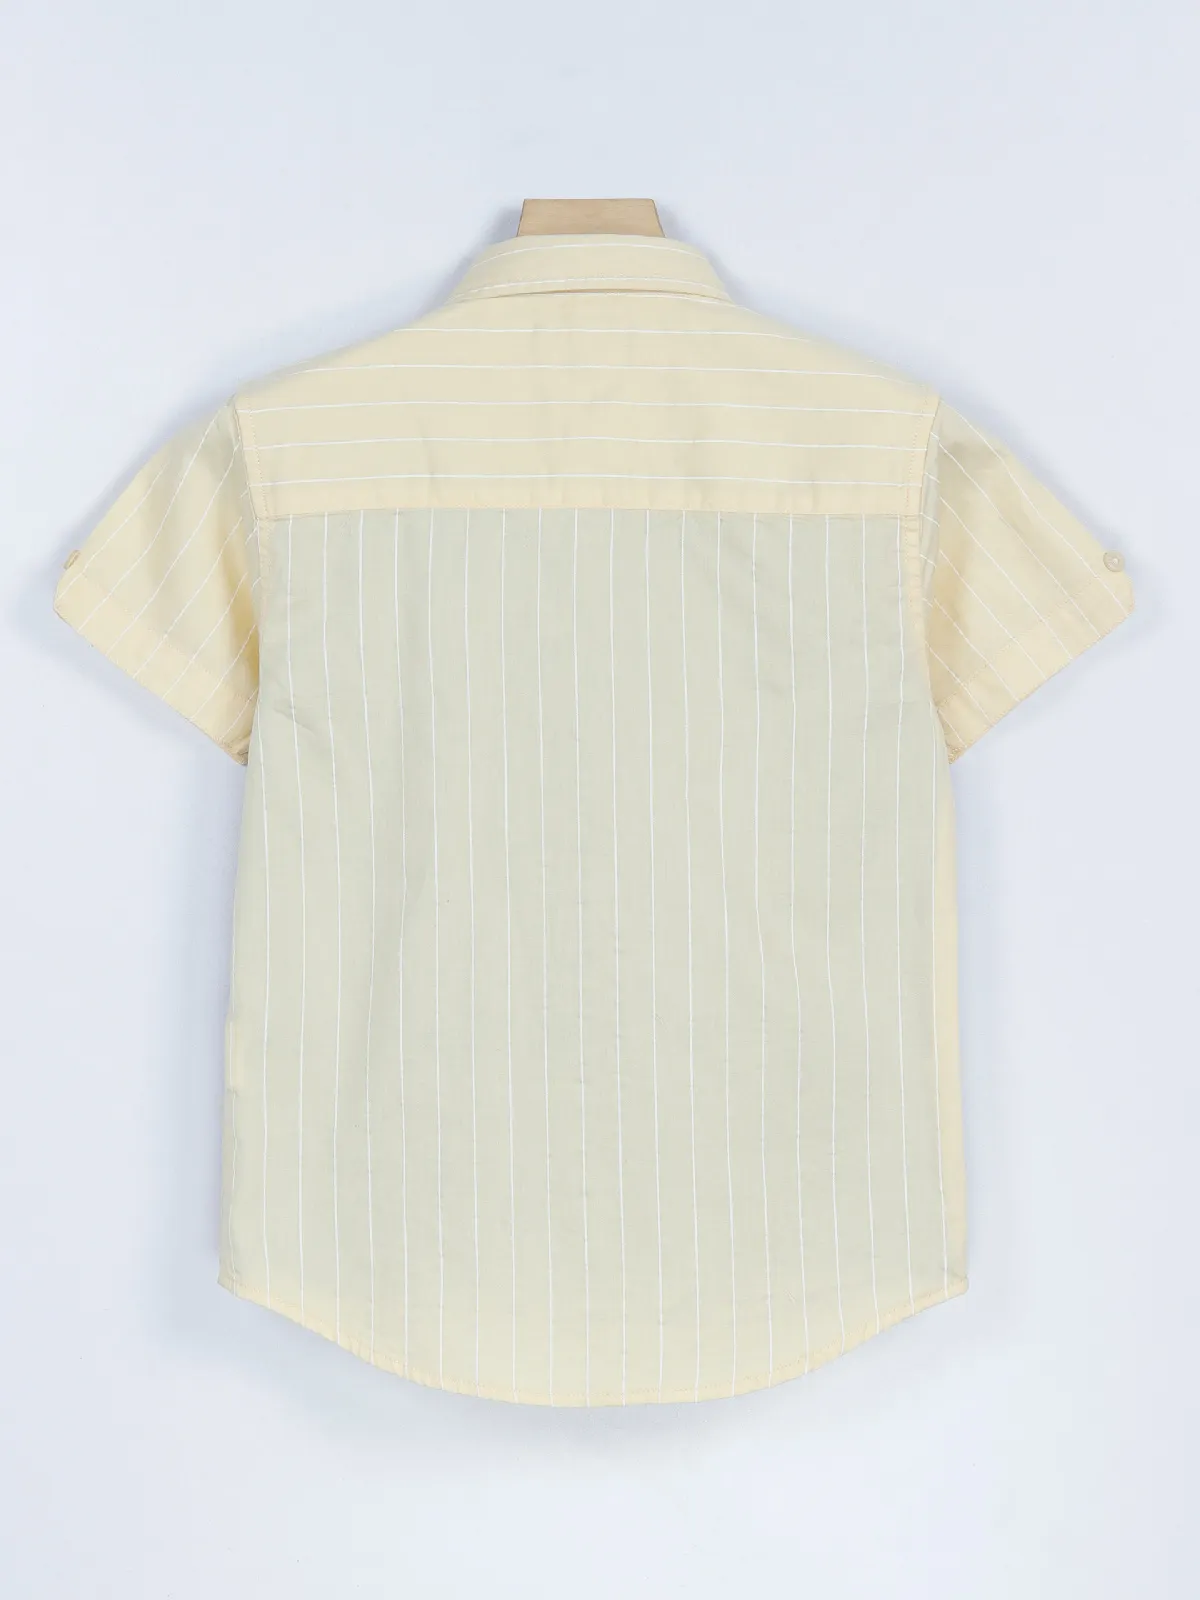 Gini & Jony light yellow cotton stripe shirt